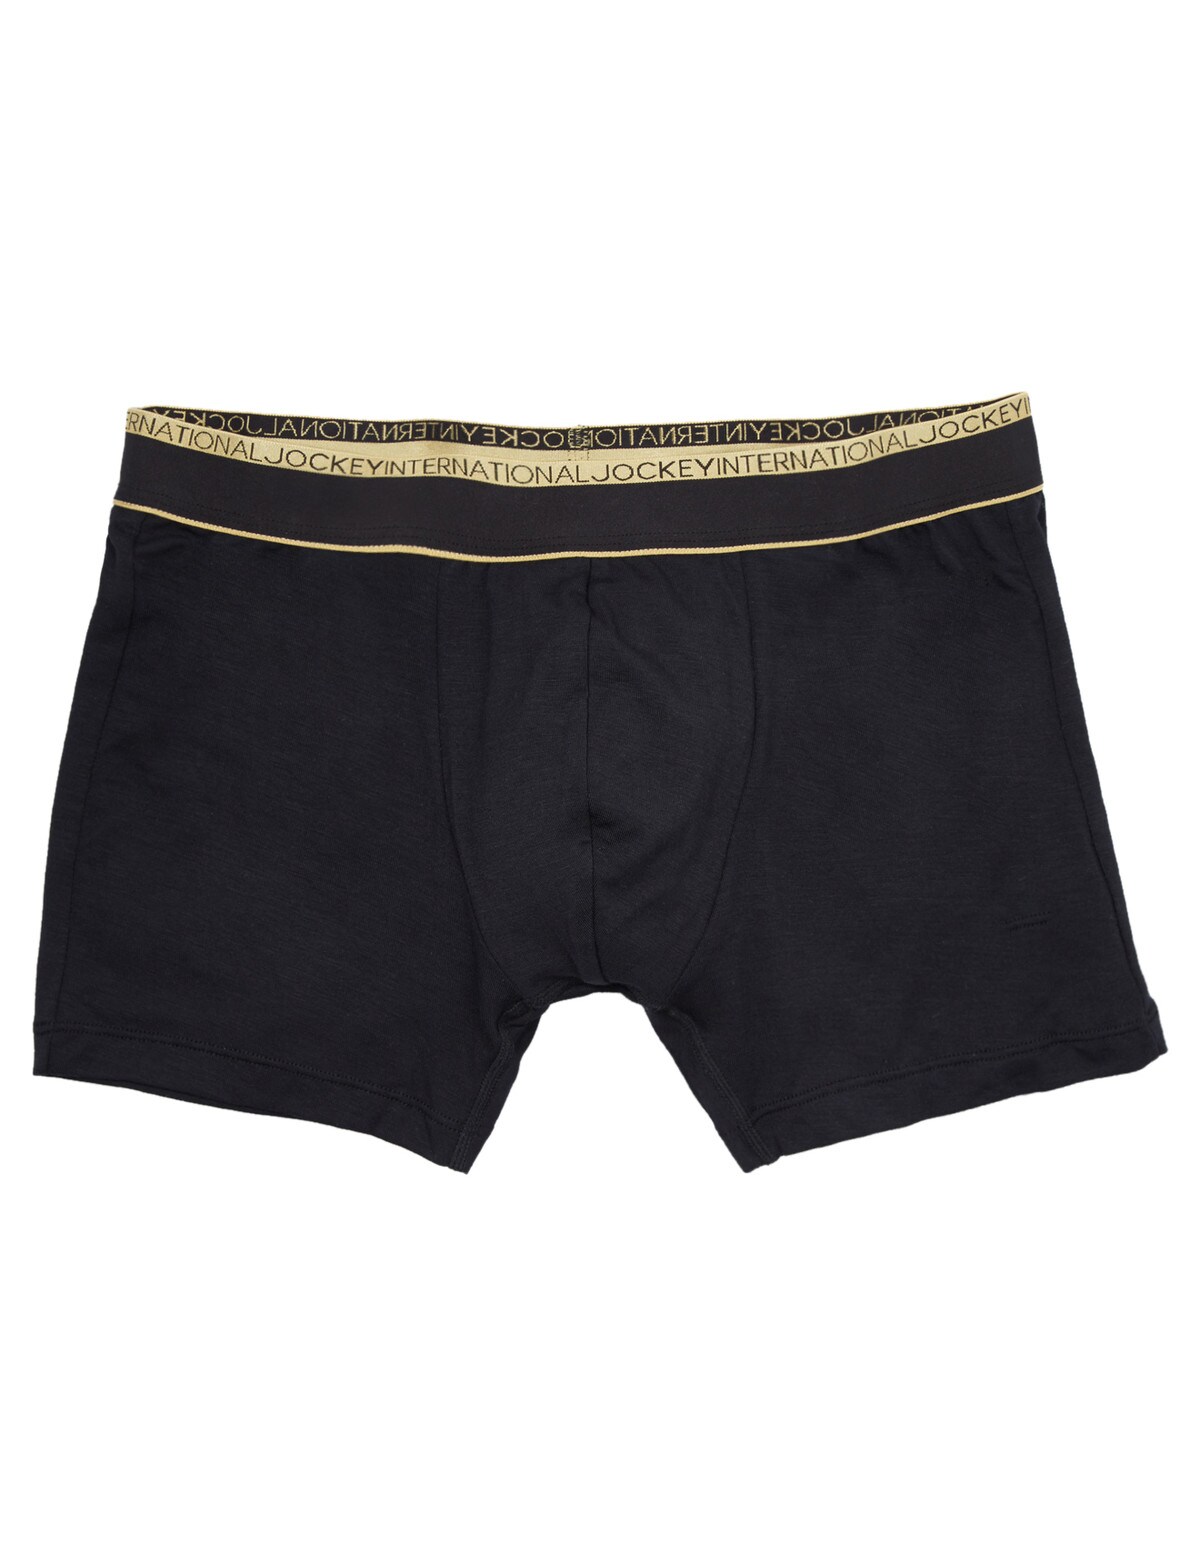 Jockey M C Y-Front Brief 1850-0913 - Brief - Trunks - Underwear -  Timarco.co.uk